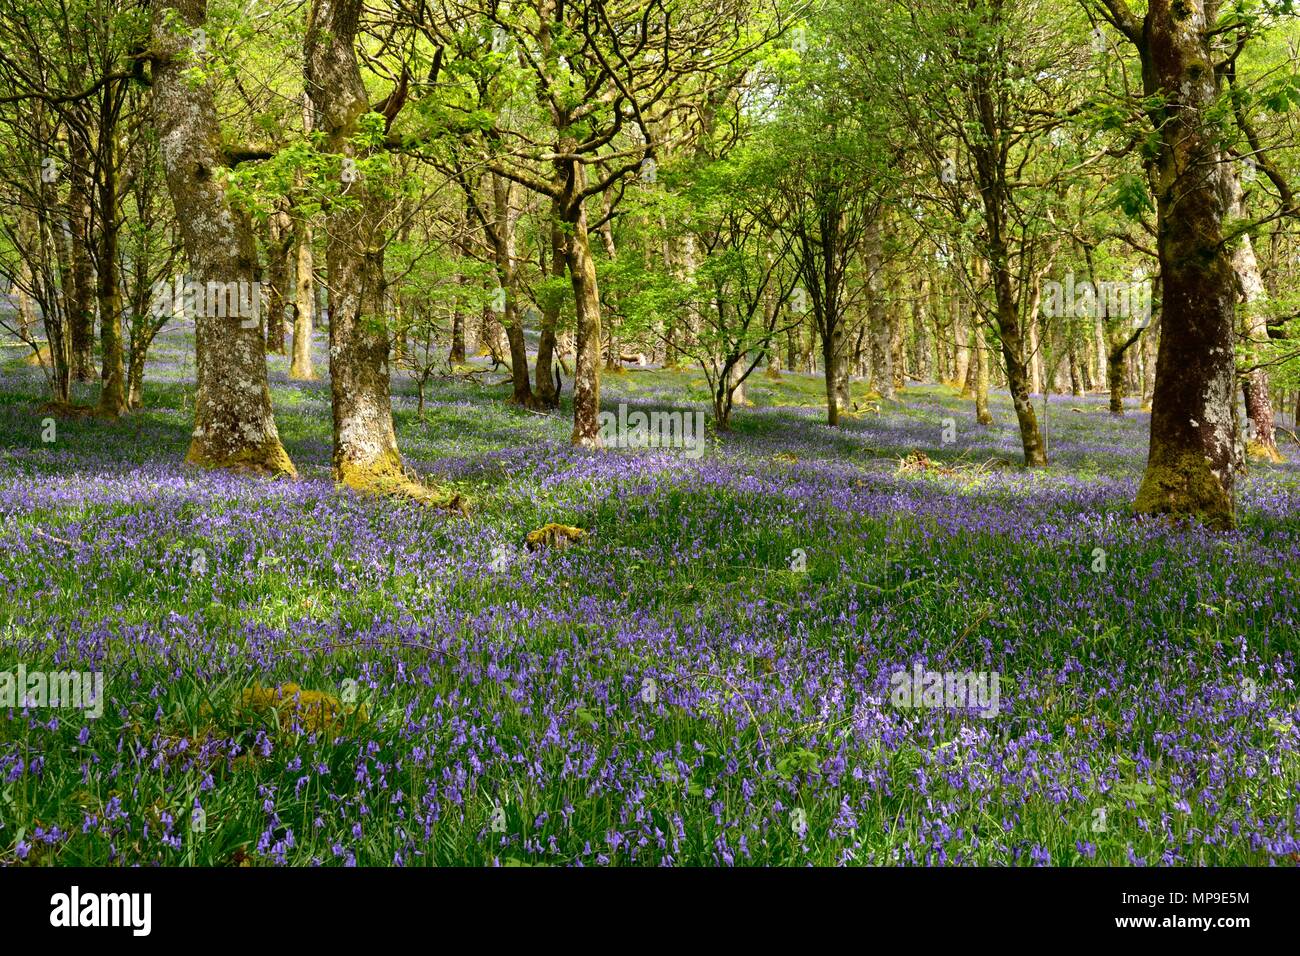 Soleil pommelé sur les bluebells Hyacinthoides non scripta Gwenffrwd Dinas réserve RSPB Rhandirmwyn Cambrian Mountains Wales Cymru UK Banque D'Images